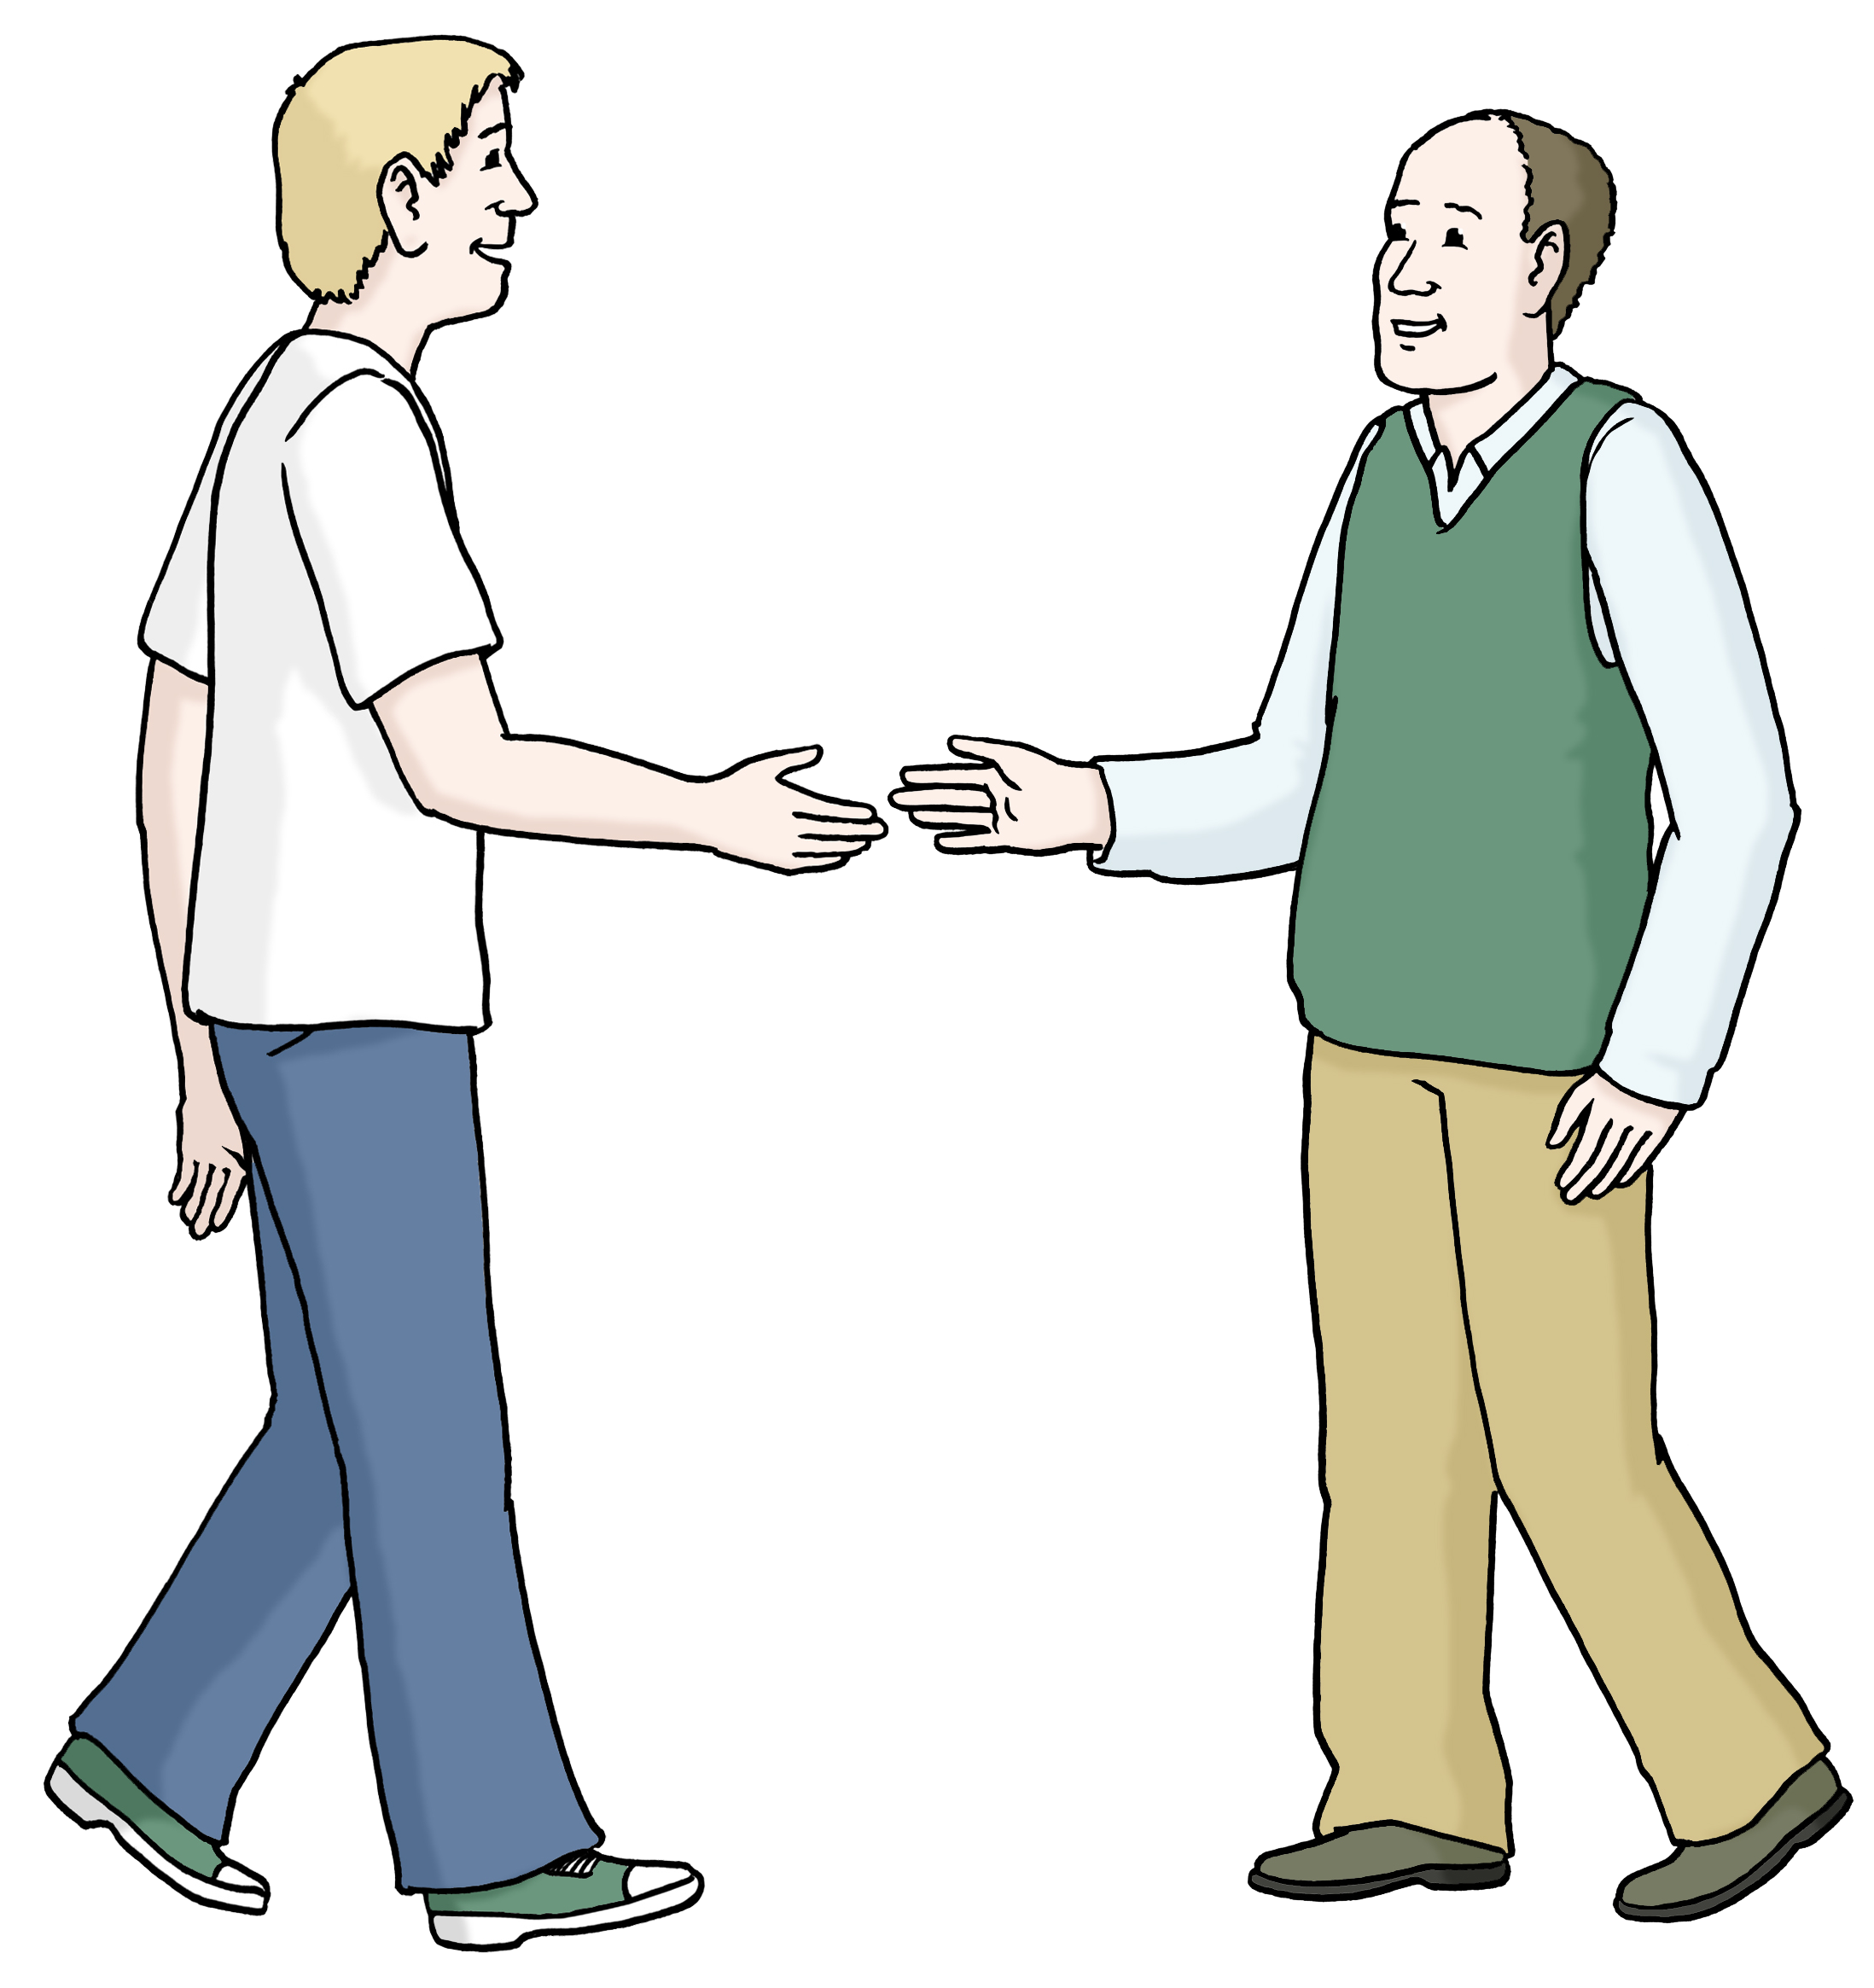 Leichte Sprache Bild: Zwei Männer treffen sich und reichen sich die Hand